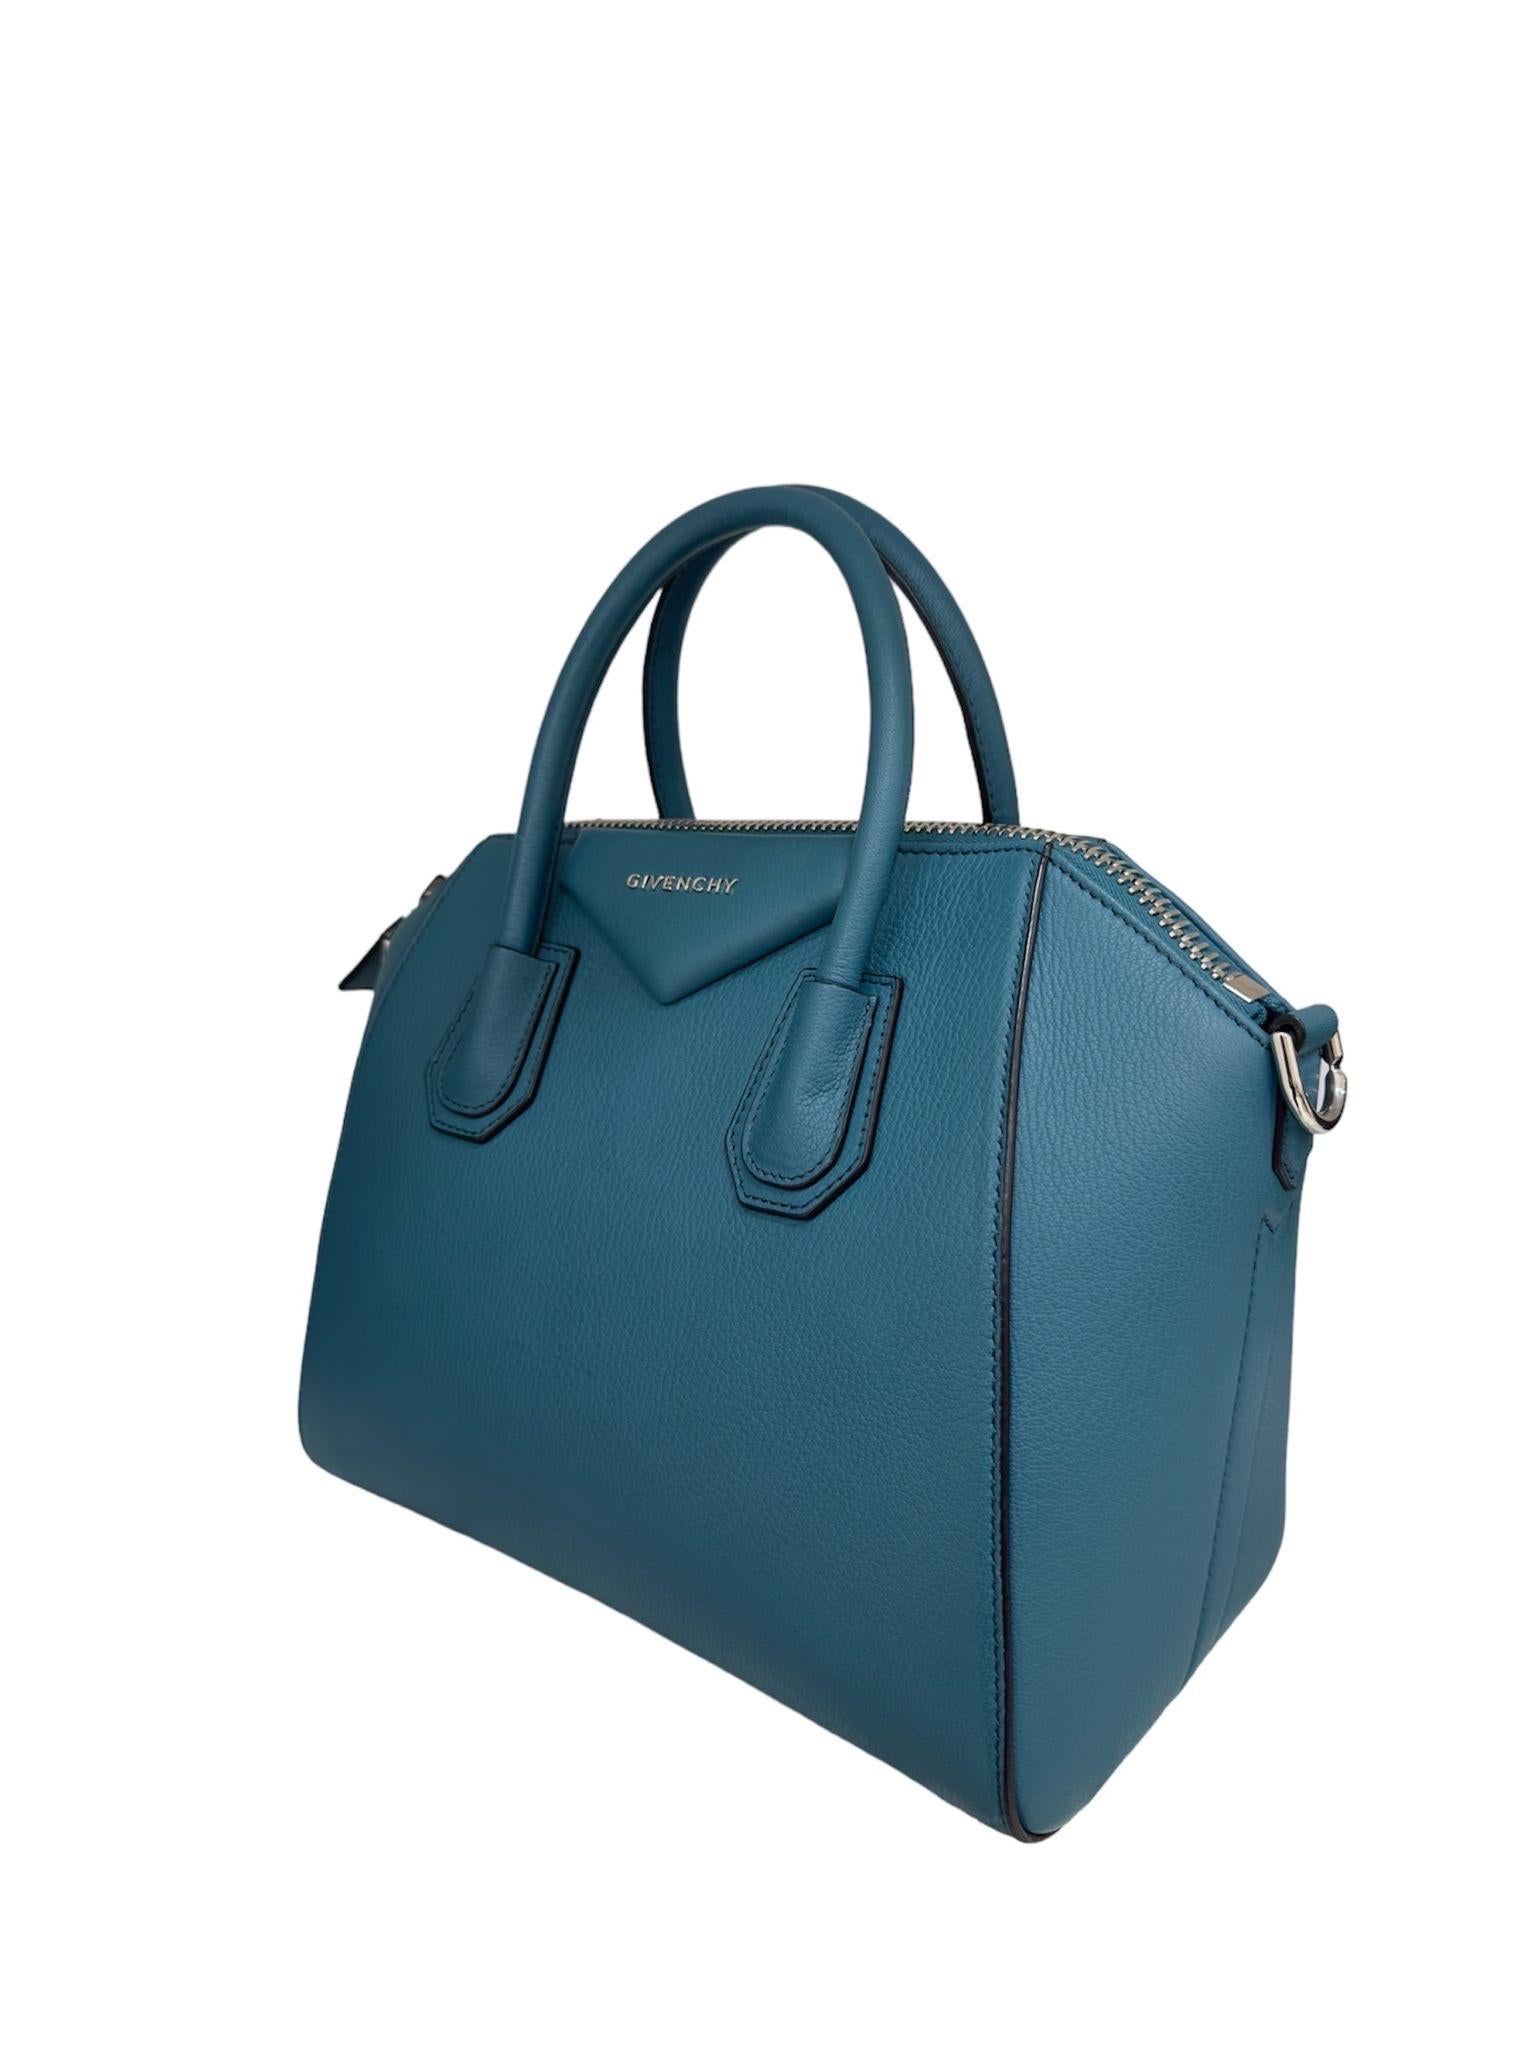 Givenchy Antigona Small Blu Petrolio Borsa A Spalla In Excellent Condition For Sale In Torre Del Greco, IT